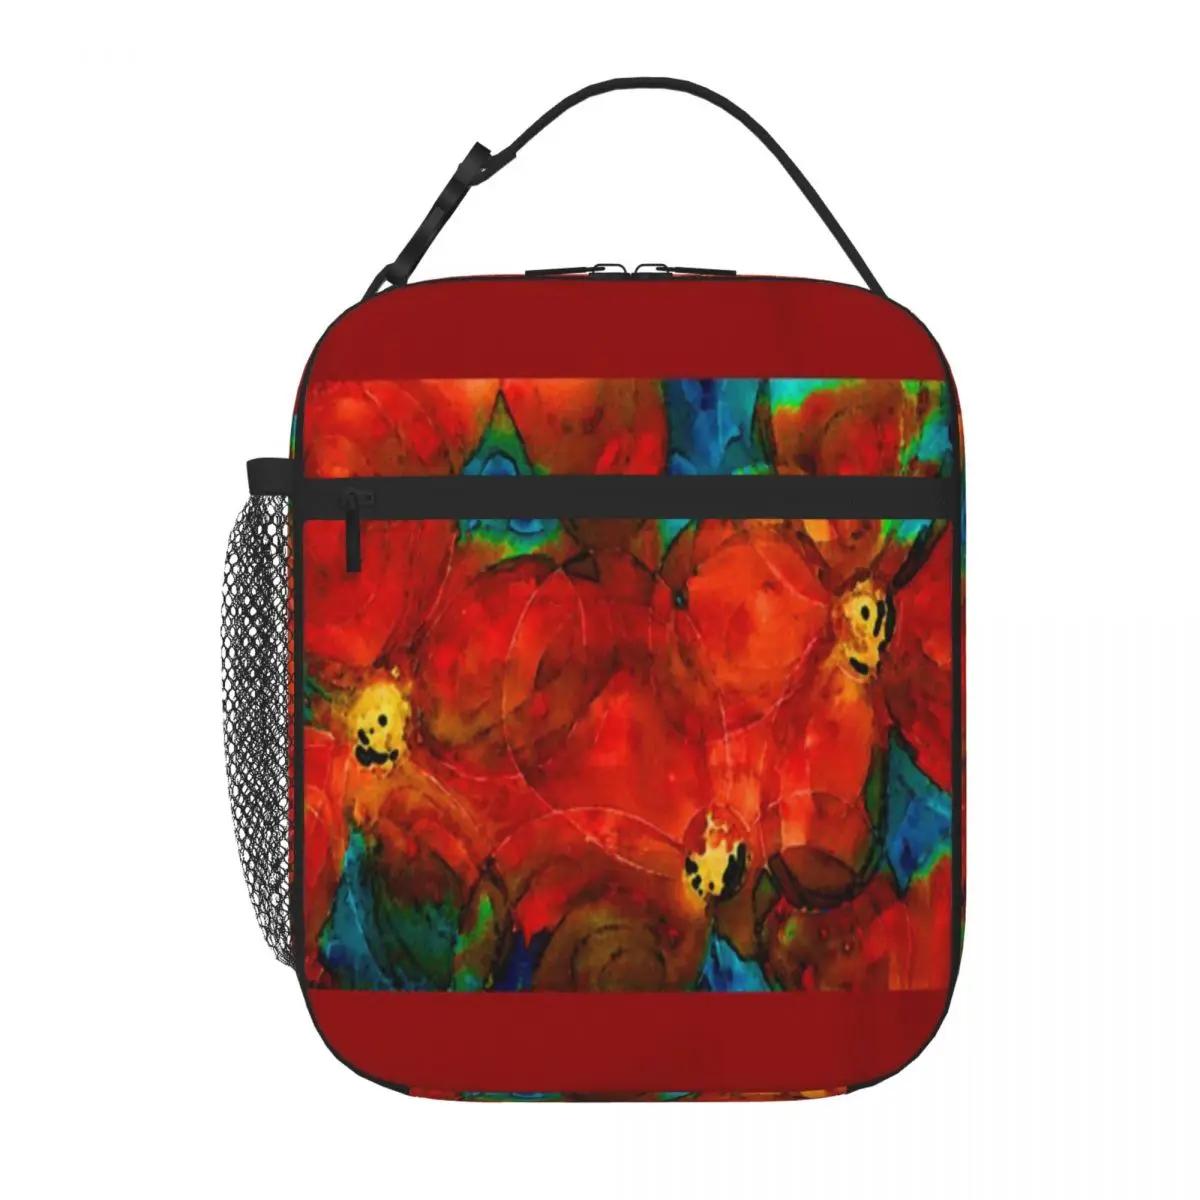 

Ланч-бокс «Сад» с яркими красными цветами от Шарон КАММИНГЗ Шэрон КАММИНГЗ, Ланч-бокс, изоляционные сумки, сумка для ланча для детей